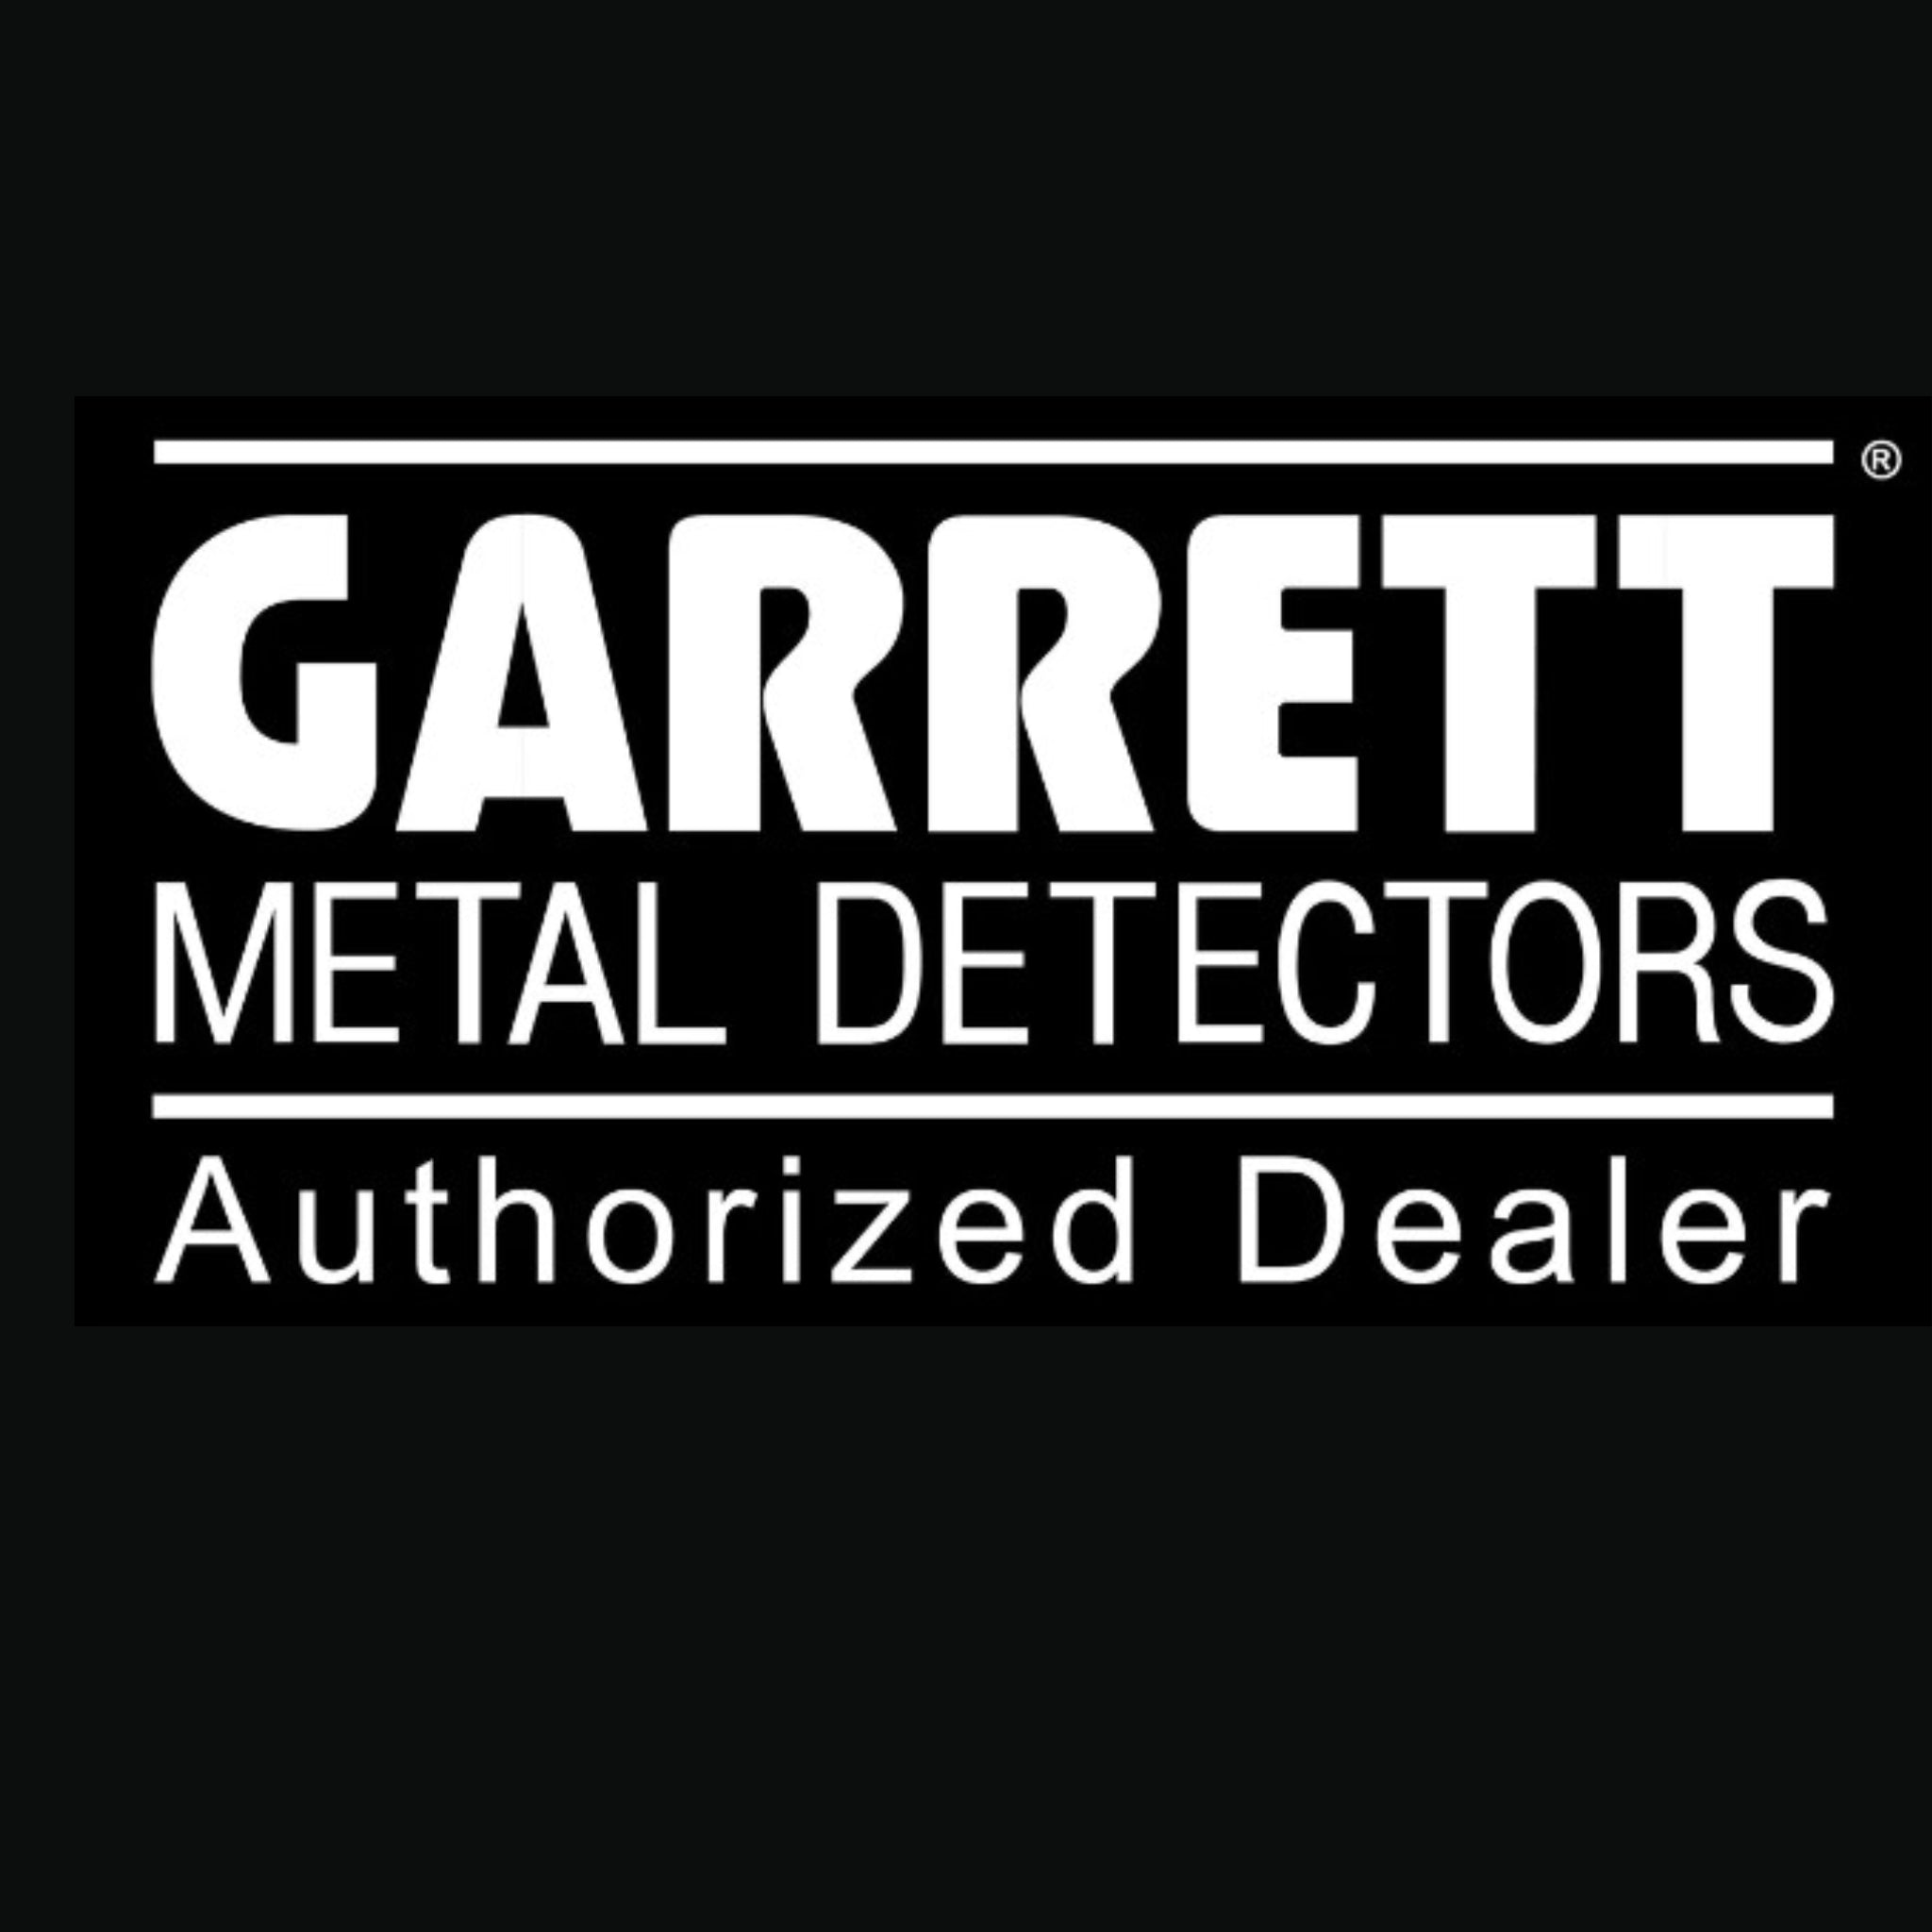 Garrett Metal Detector brands and accessories